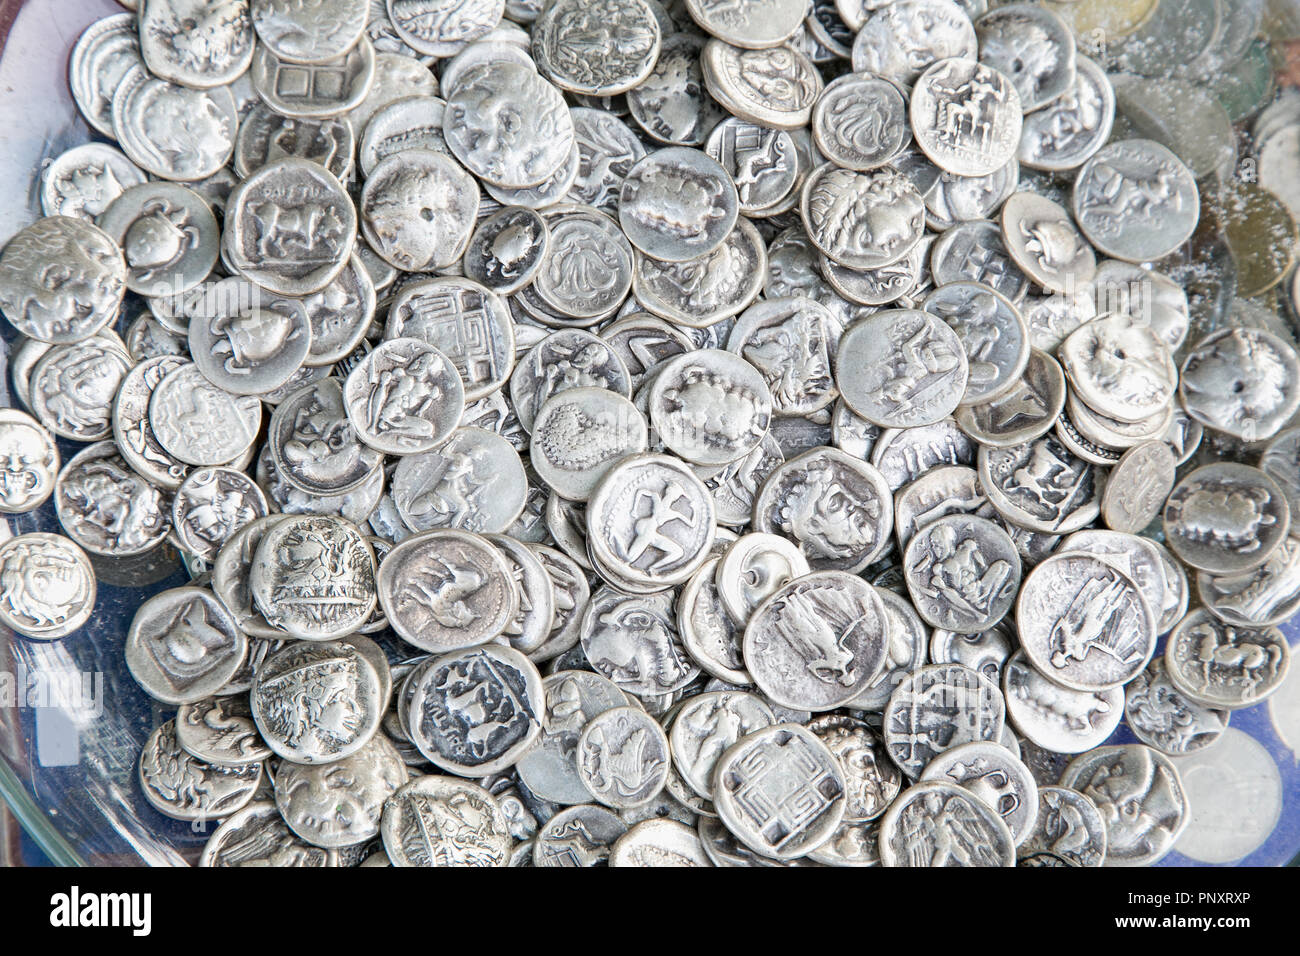 Athen Griechenland - Juni 20, 2016: Stapel von alten Münzen meist griechische Drachme lepta und dekares. Antike Geld Hintergrund. Athen, Griechenland. Stockfoto